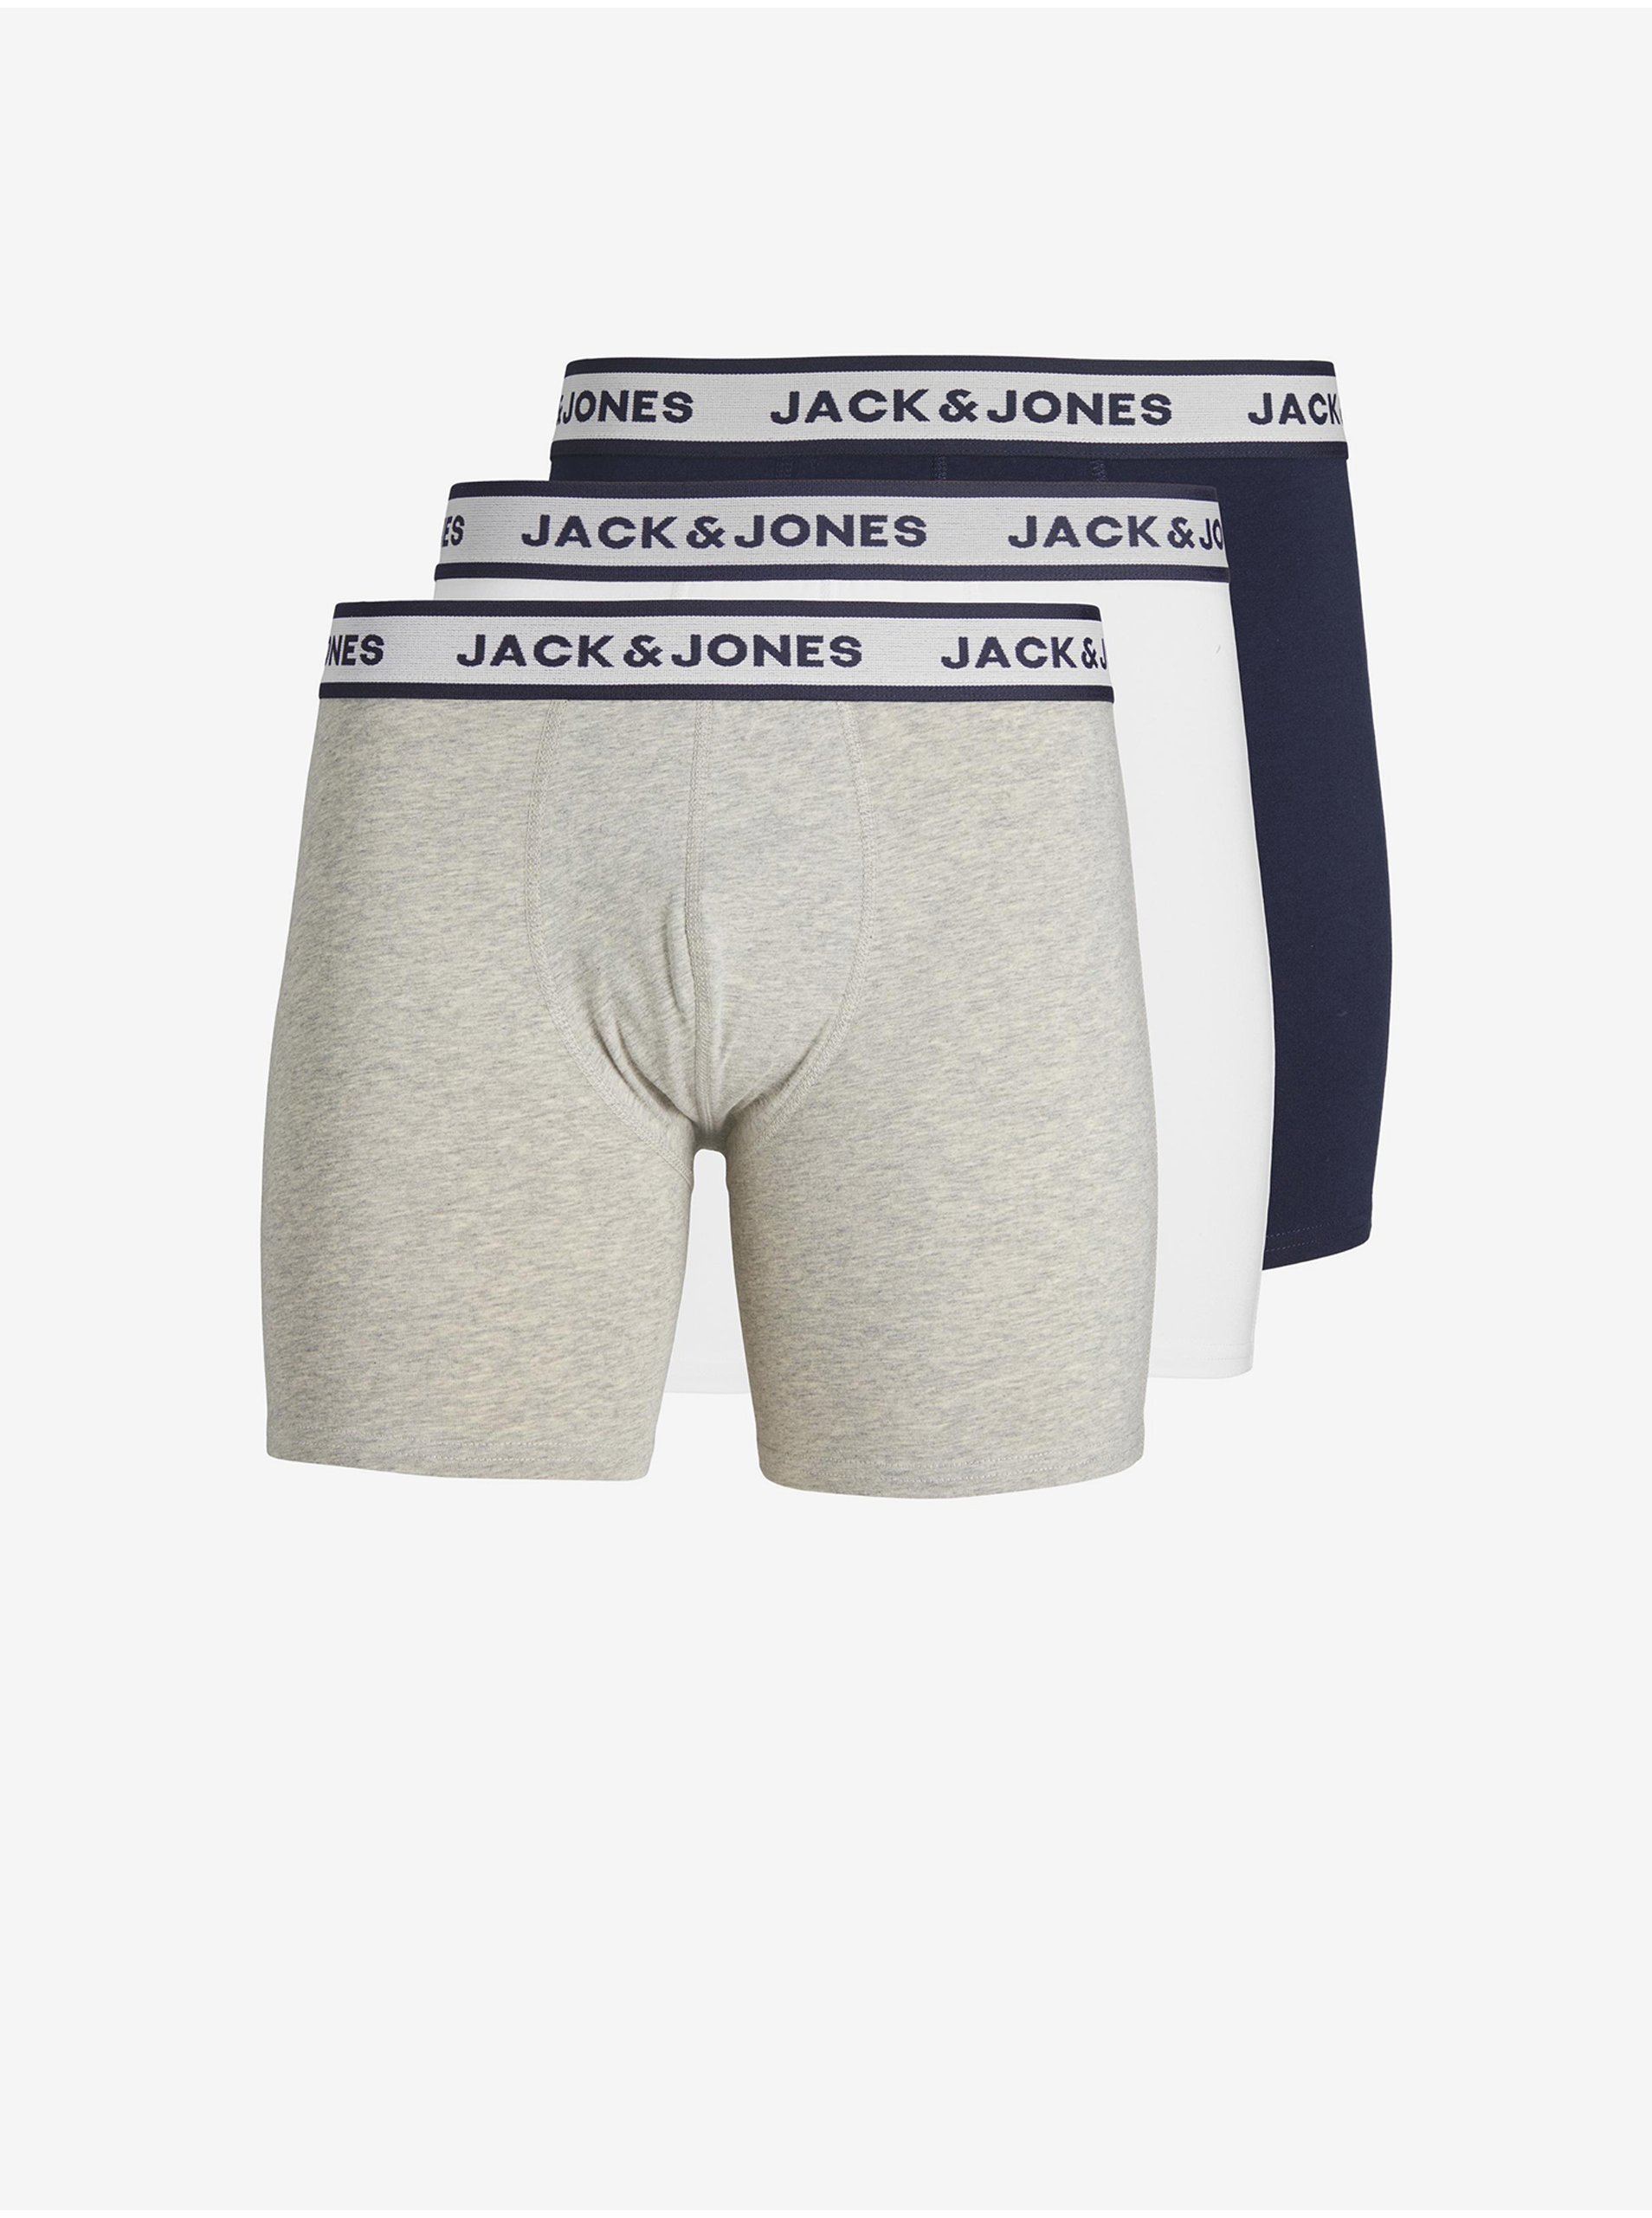 Levně Sada tří pánských boxerek ve světle šedé, bílé a tmavě modré barvě Jack & Jones Solid